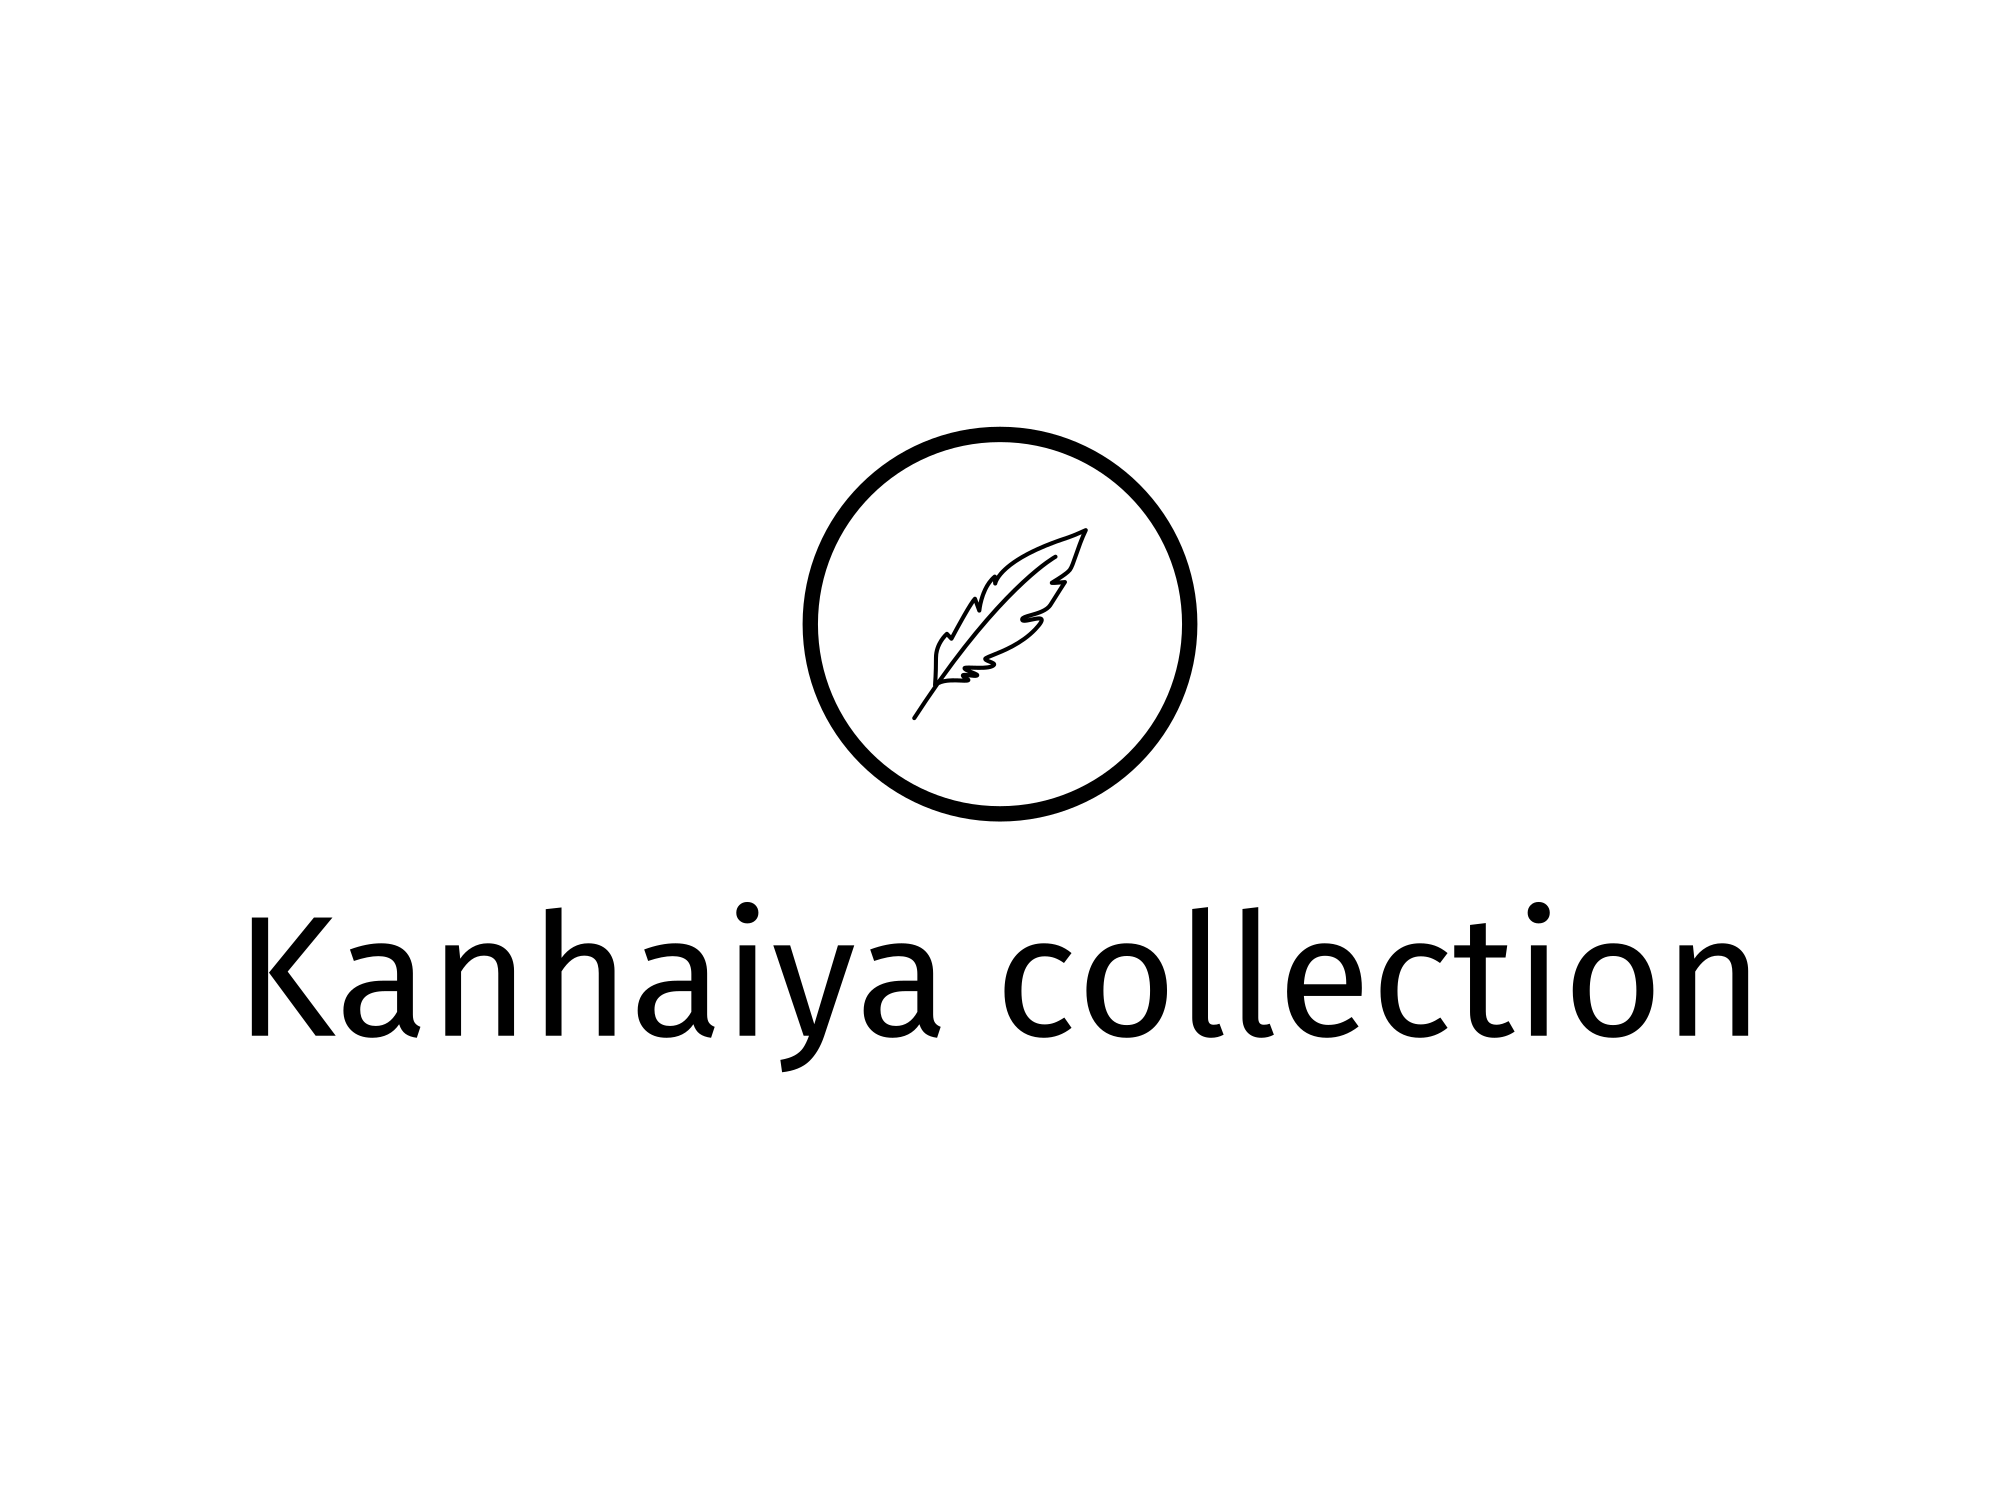 Kanhaiya collection logo